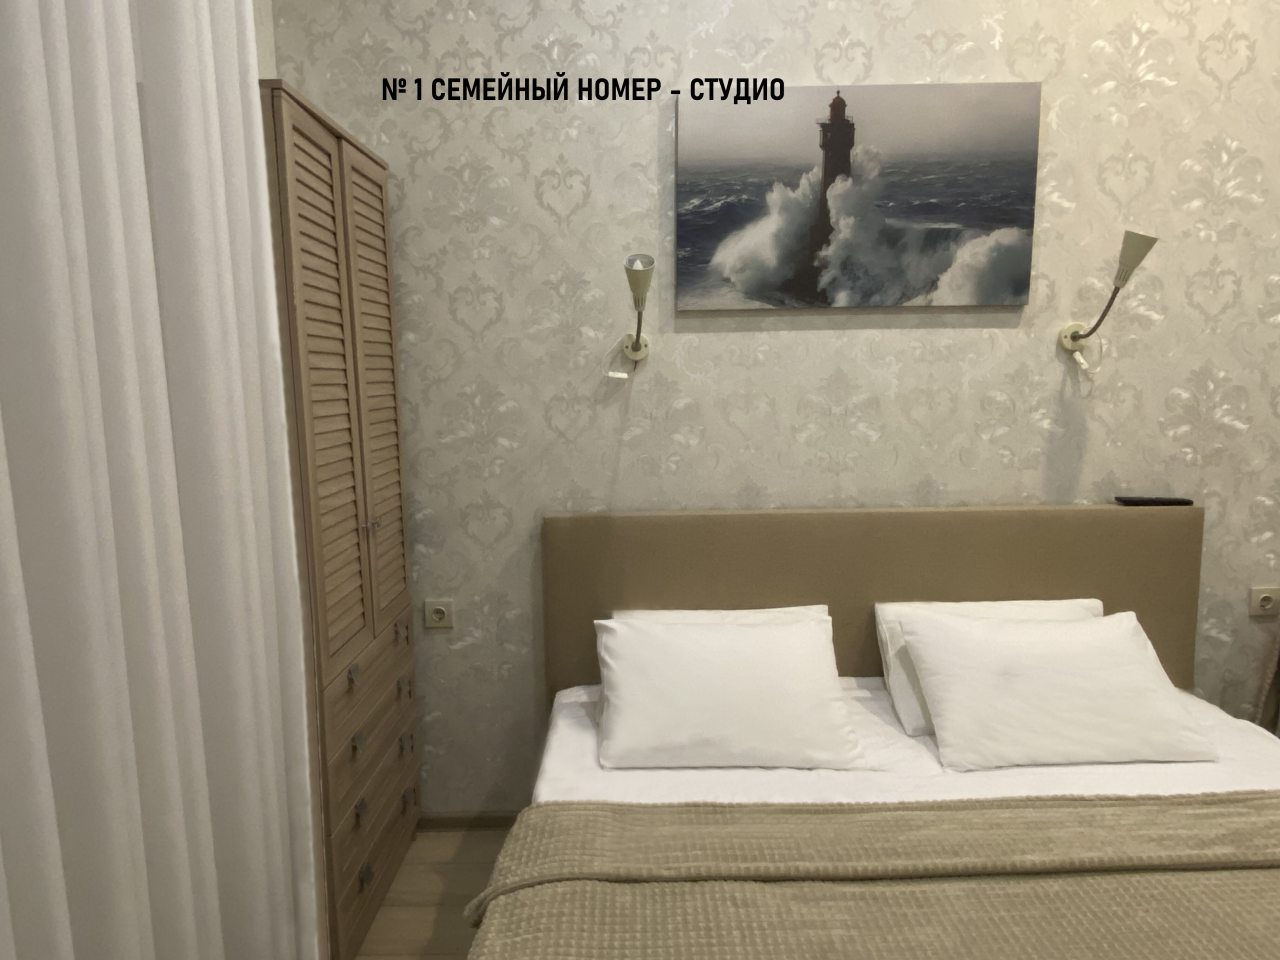 Студио (Семейный номер-студио с мини-кухней №1, №3) мини-отеля Hotel 812, Санкт-Петербург